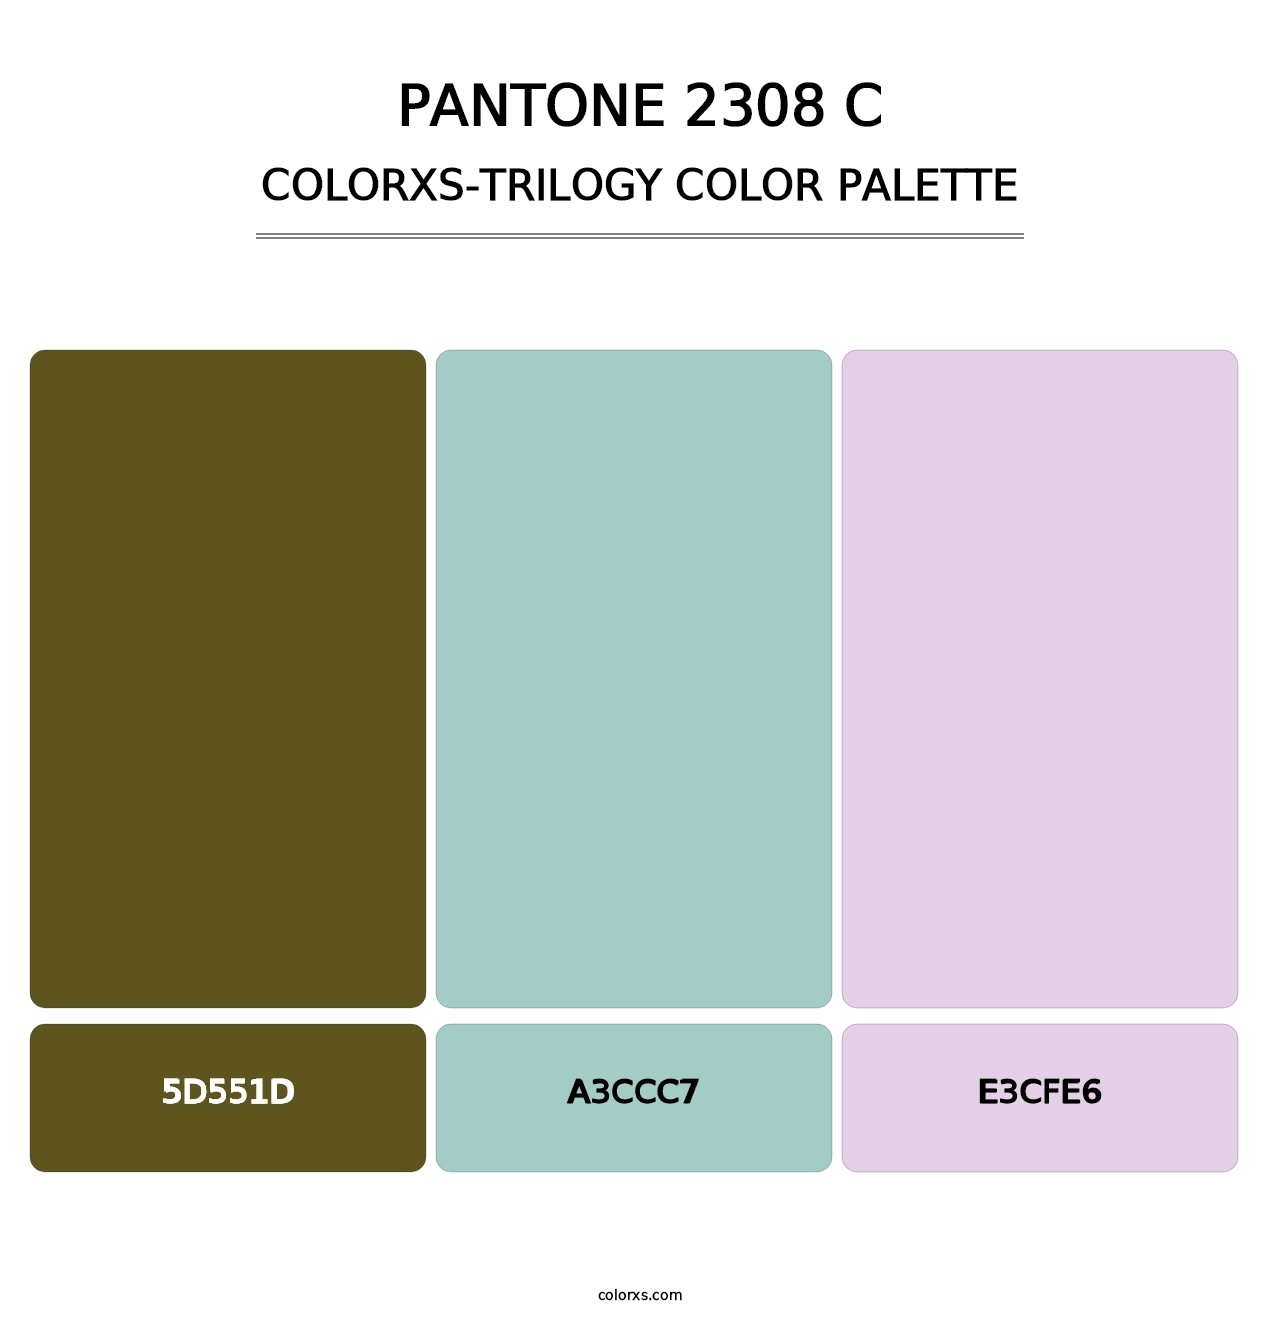 PANTONE 2308 C - Colorxs Trilogy Palette